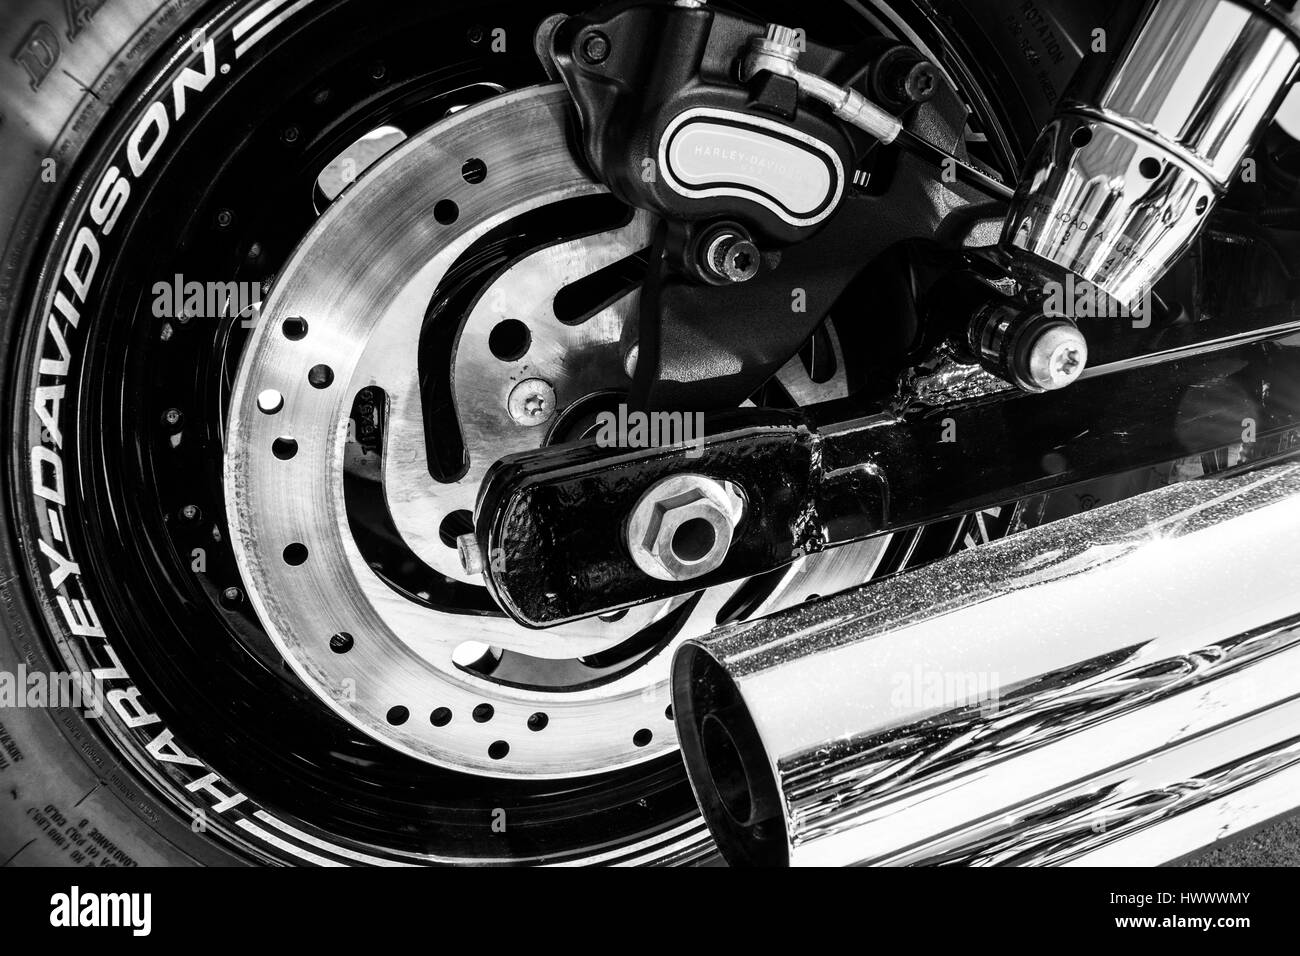 Indianapolis - Circa nel marzo 2017: pneumatico posteriore, il rotore del freno e il tubo di scarico di una Harley Davidson. Harley Davidson motocicli sono noti per la loro leale F Foto Stock